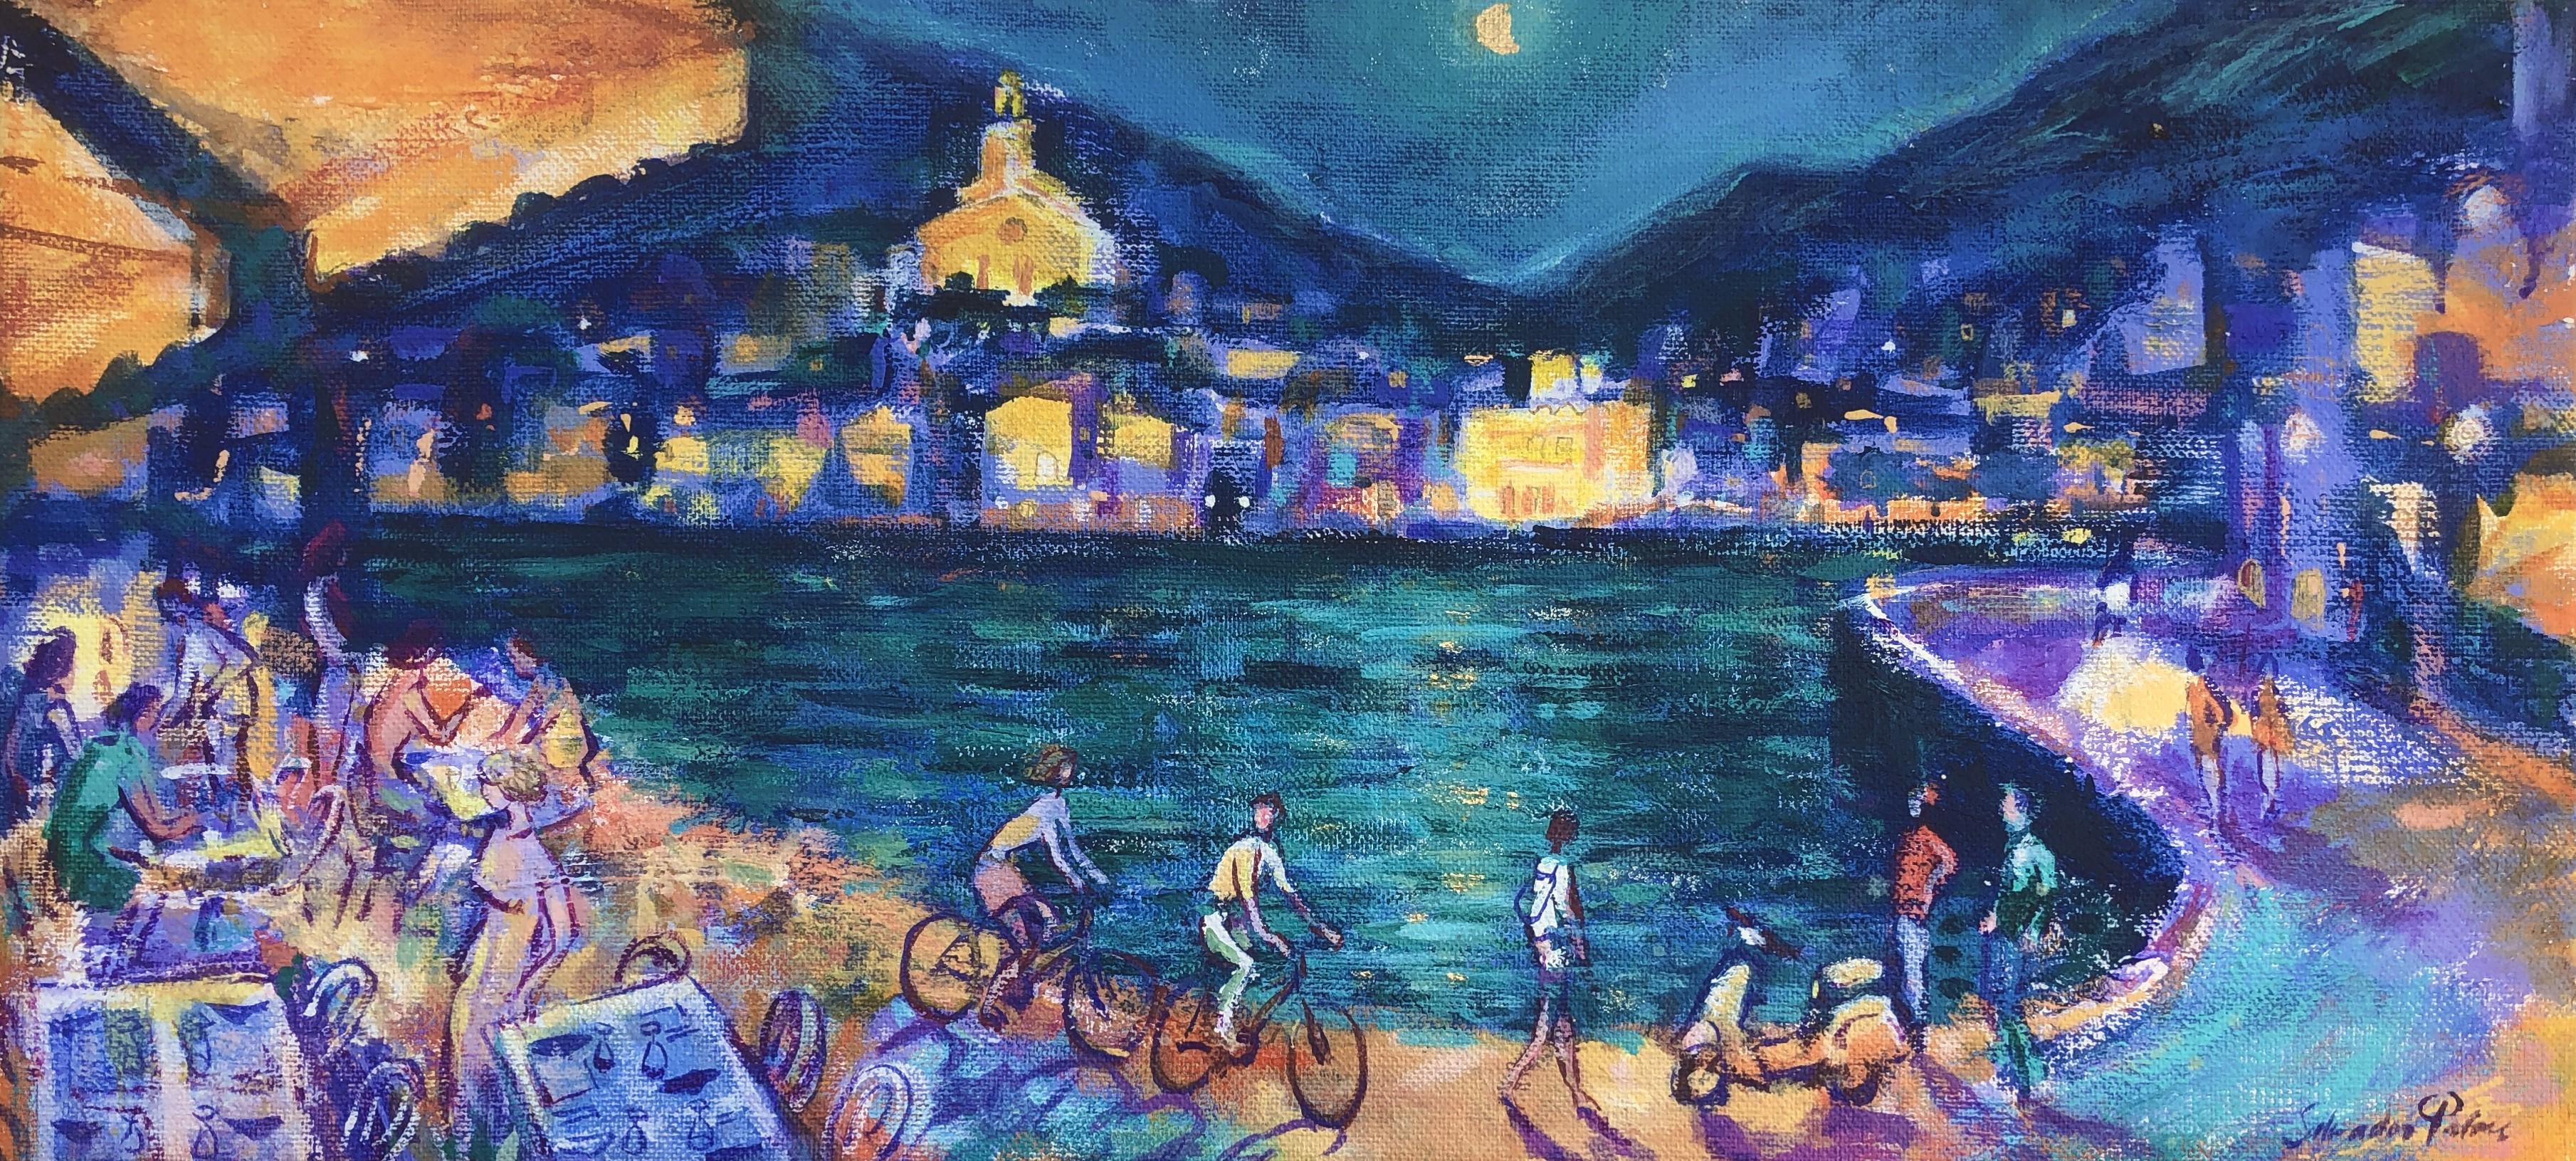 Salvador Palou Landscape Painting – Cadaqués nächtliche Öl auf Sackleinen Gemälde Spanien Seelandschaft spanisch